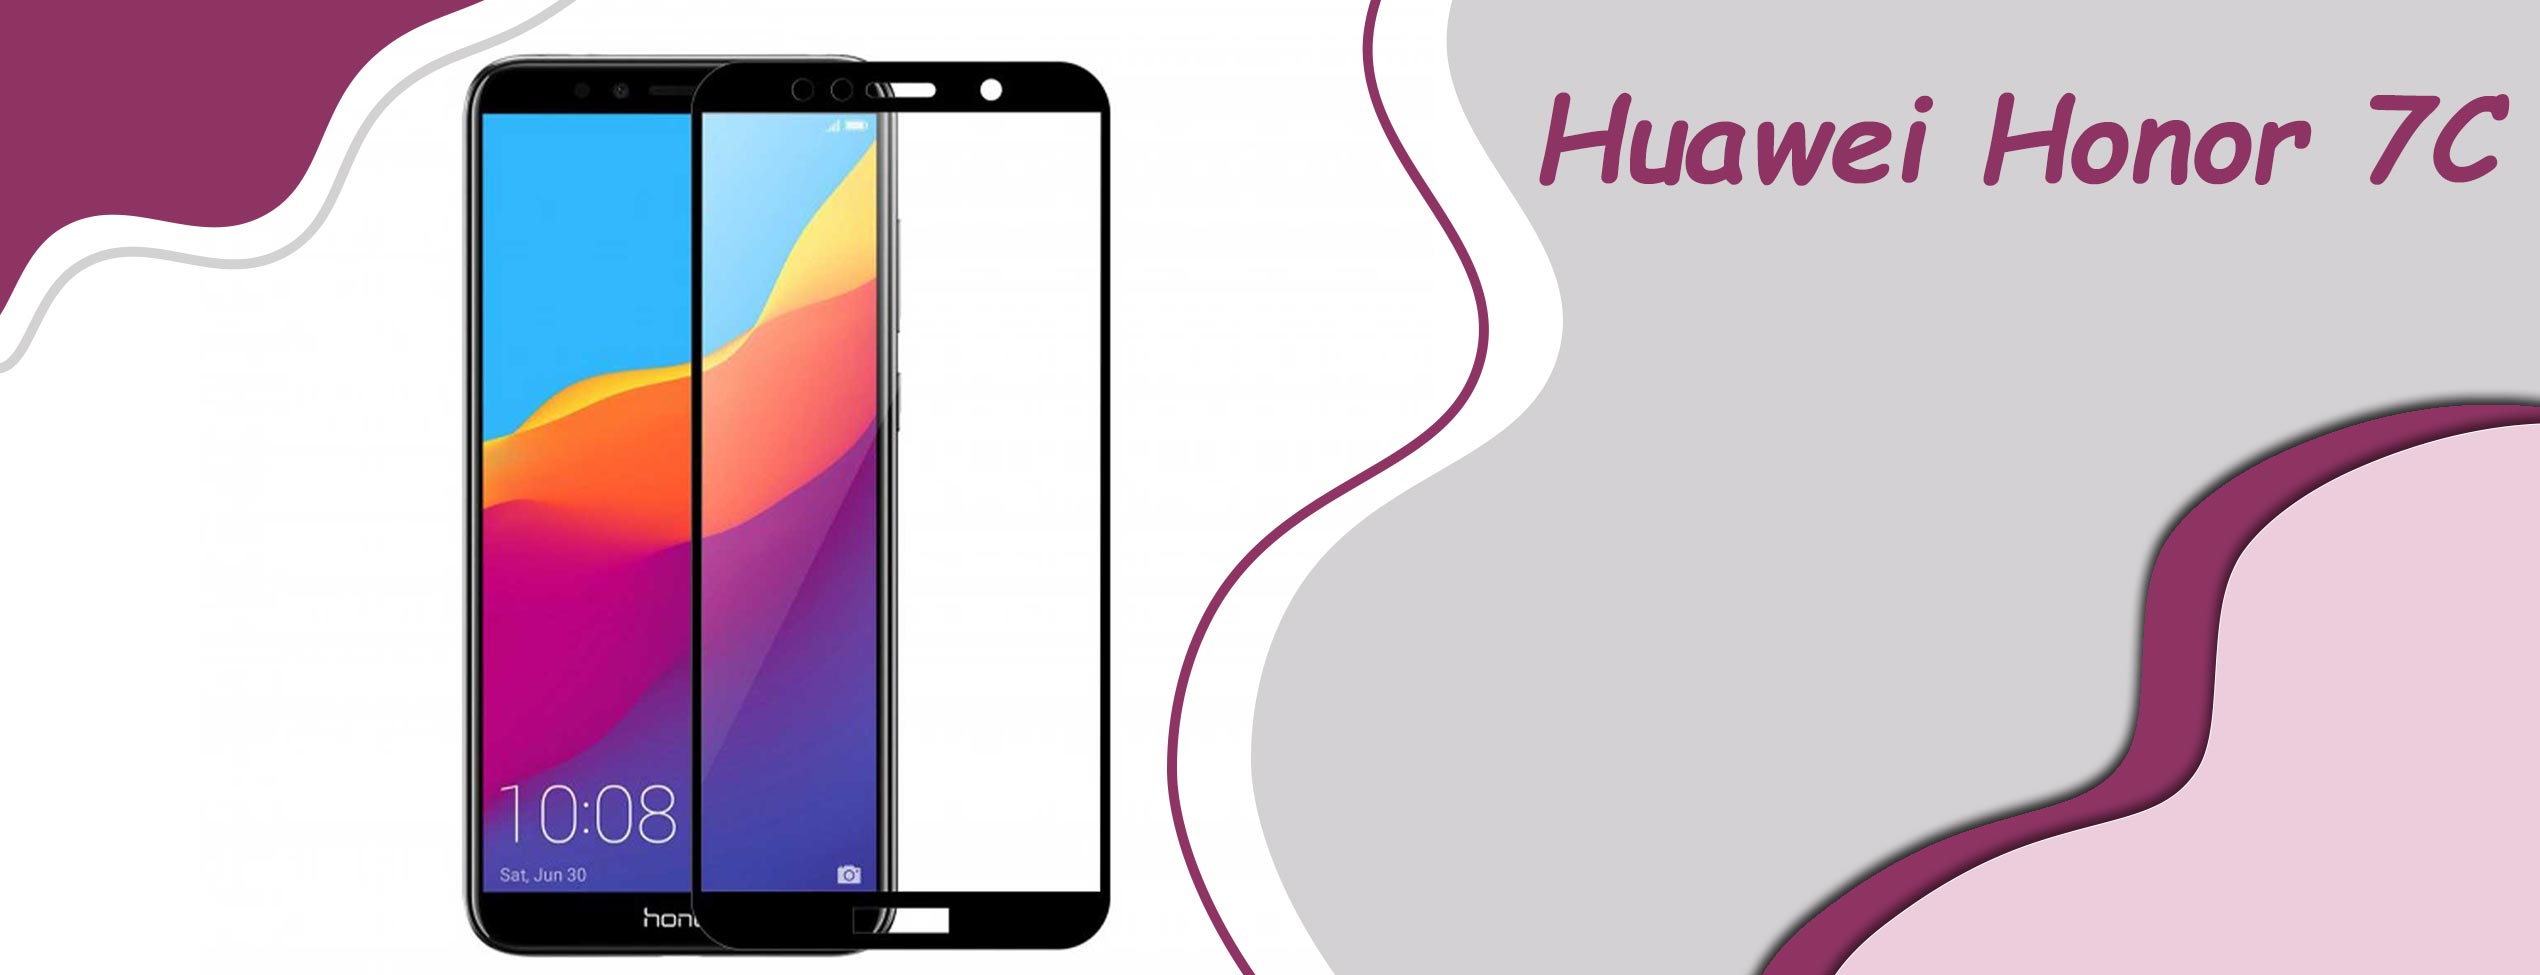 گلس فول تمام چسب موبایل هوآوی Huawei Honor 7C